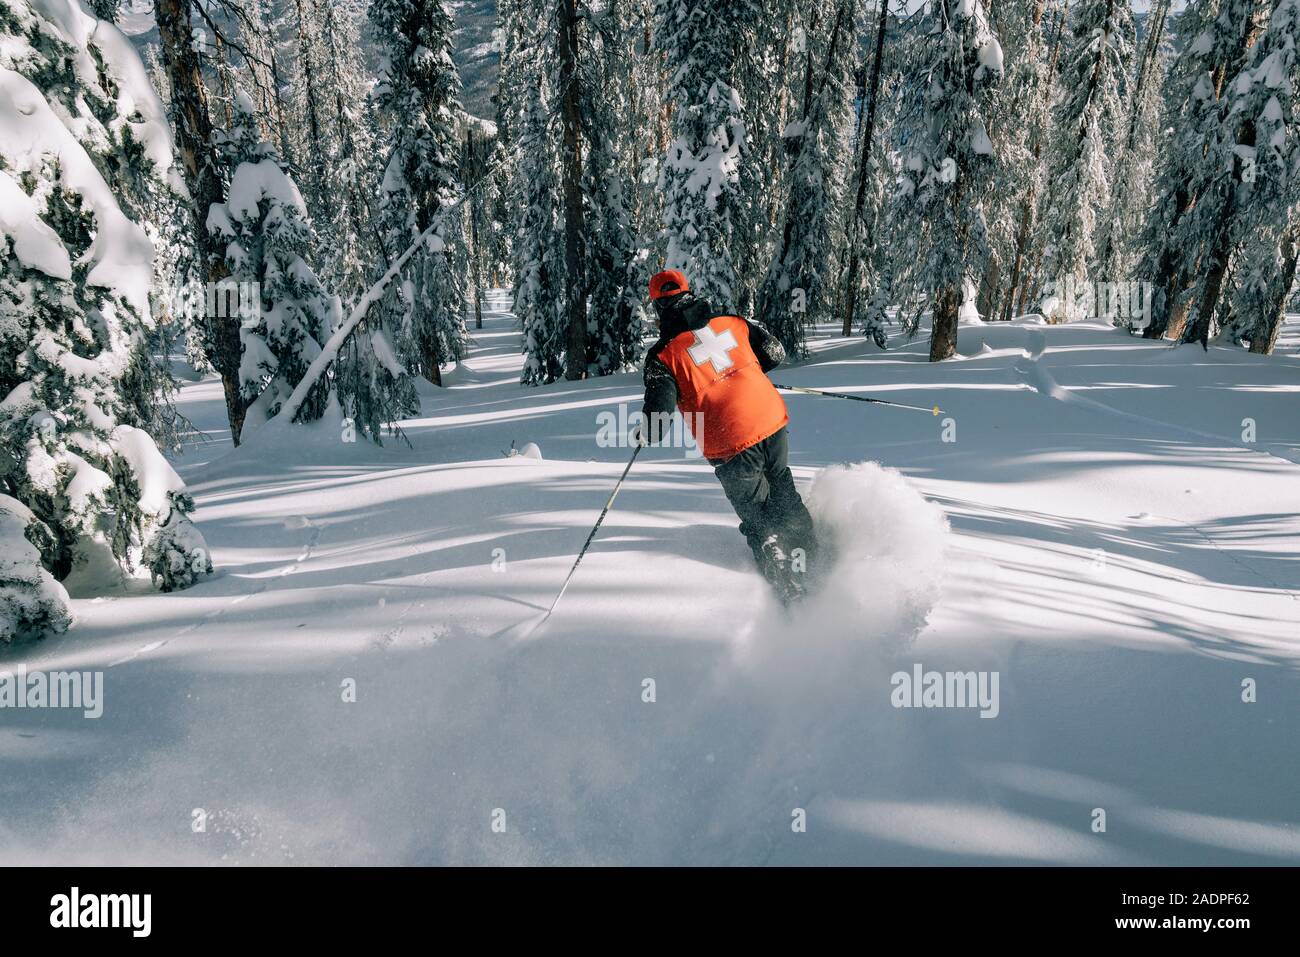 Patrouille de Ski telemark à poudre à travers des arbres au Colorado Banque D'Images